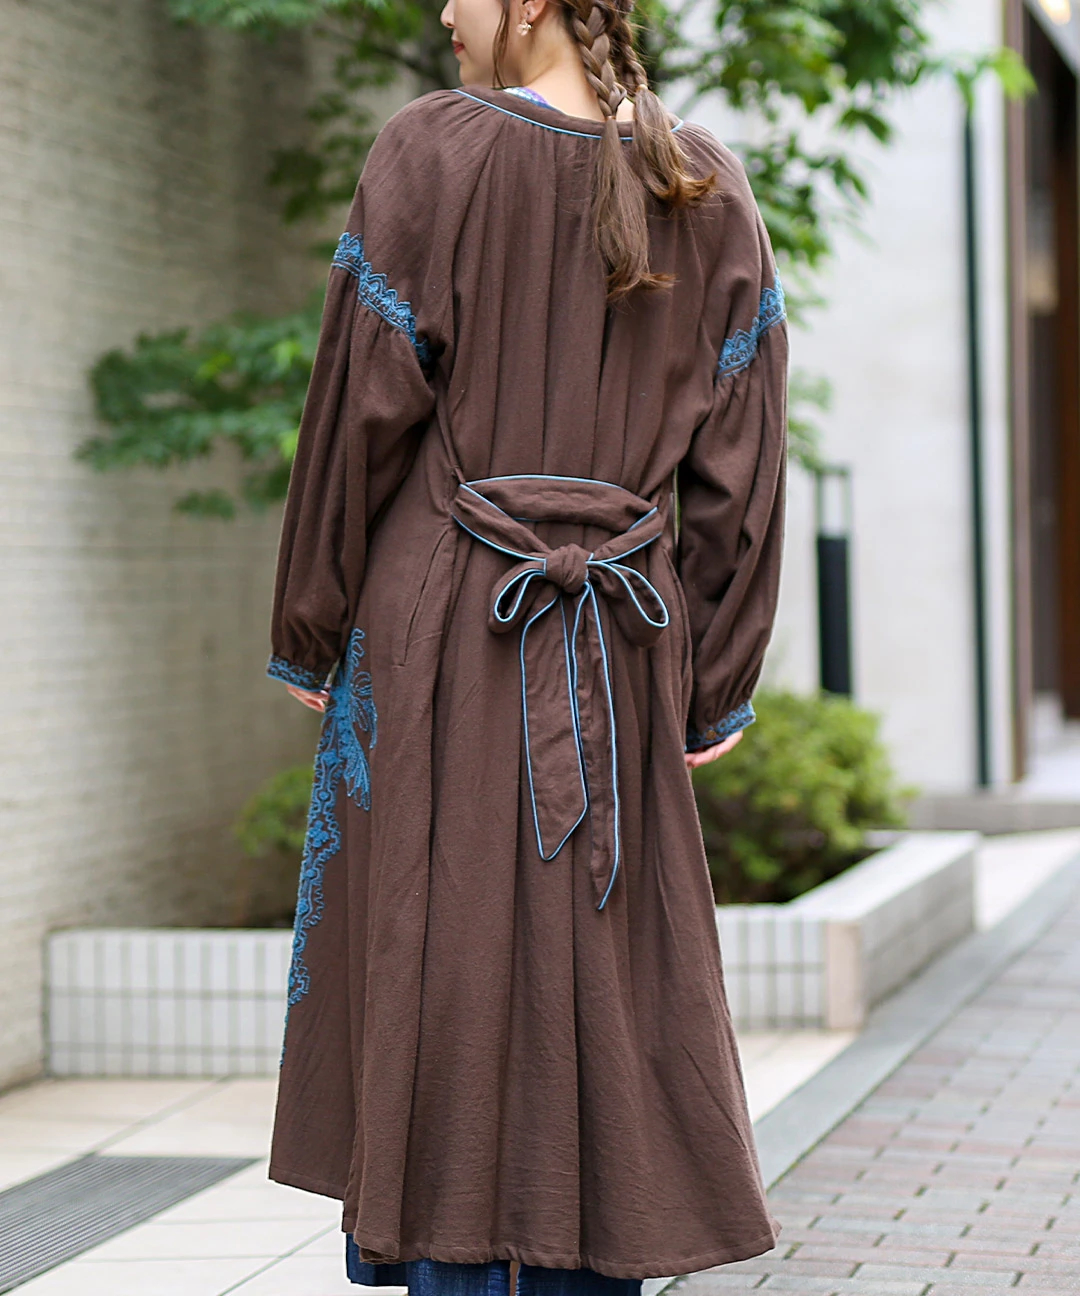 アグアヘ刺繍ガウンワンピース / ワンピース | エスニックファッション